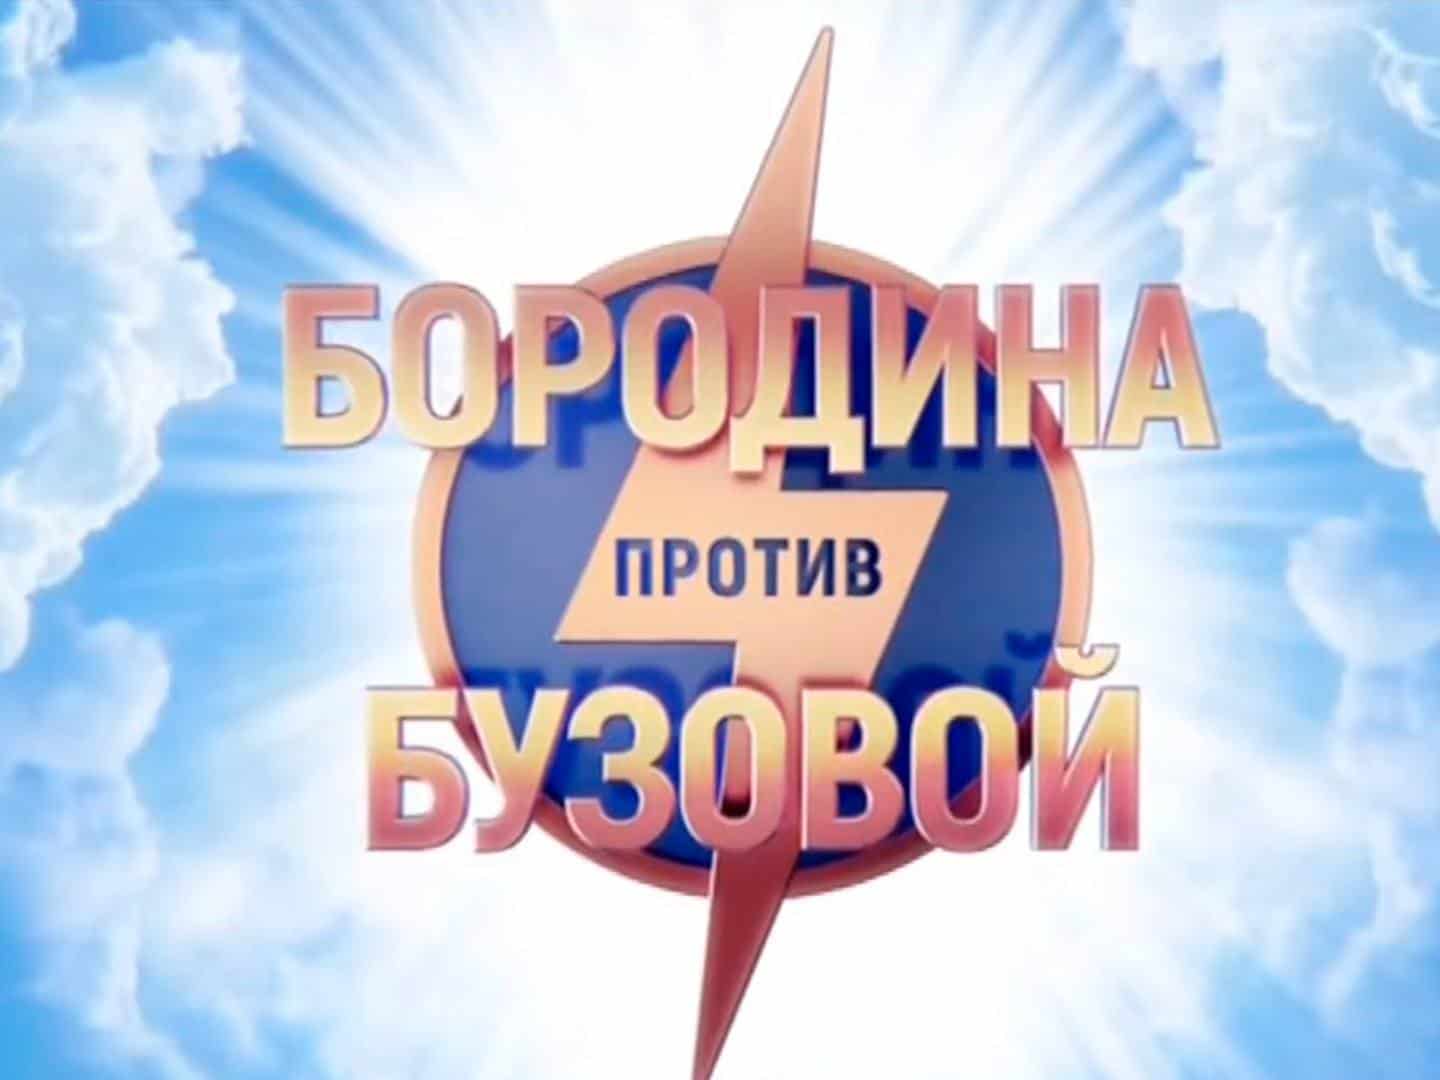 Бородина-против-Бузовой-258-серия